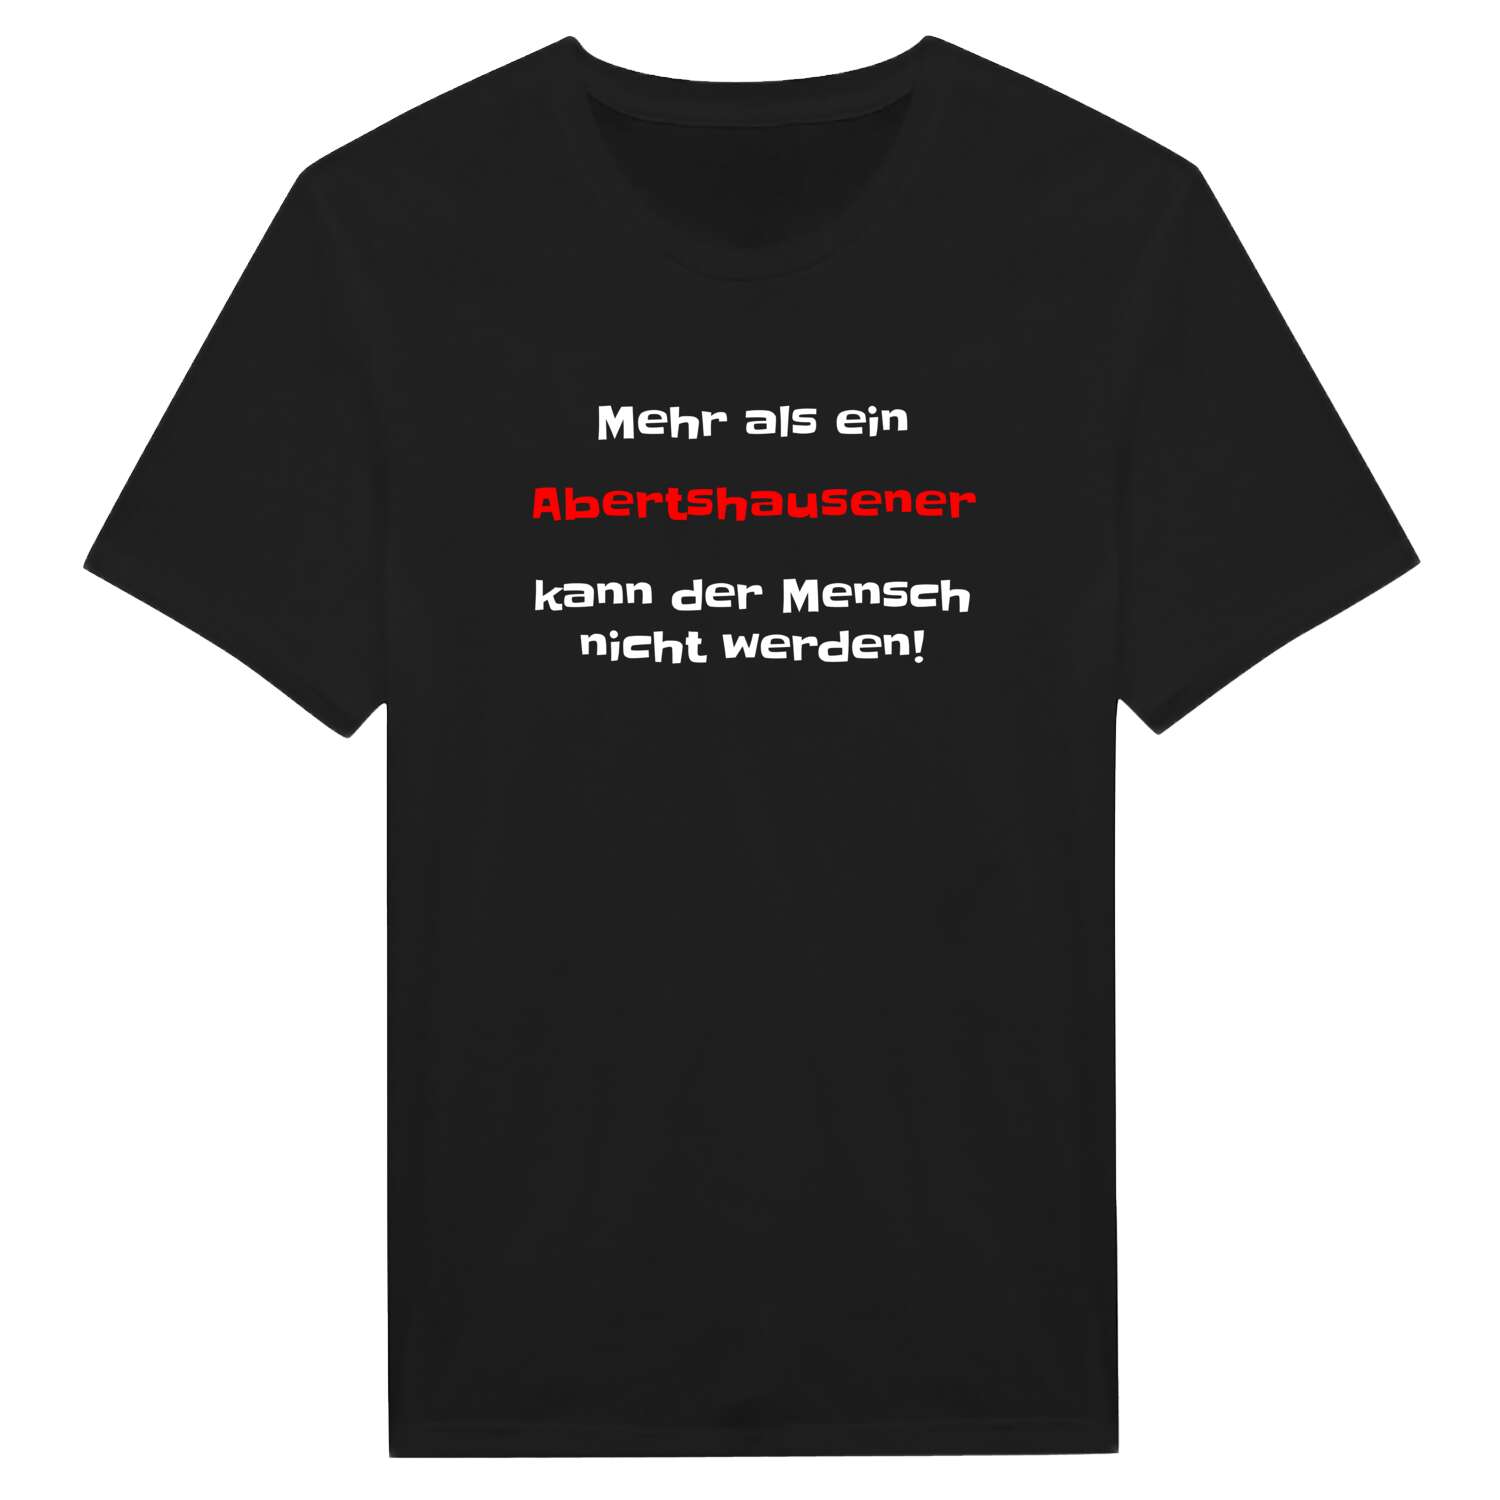 Abertshausen T-Shirt »Mehr als ein«